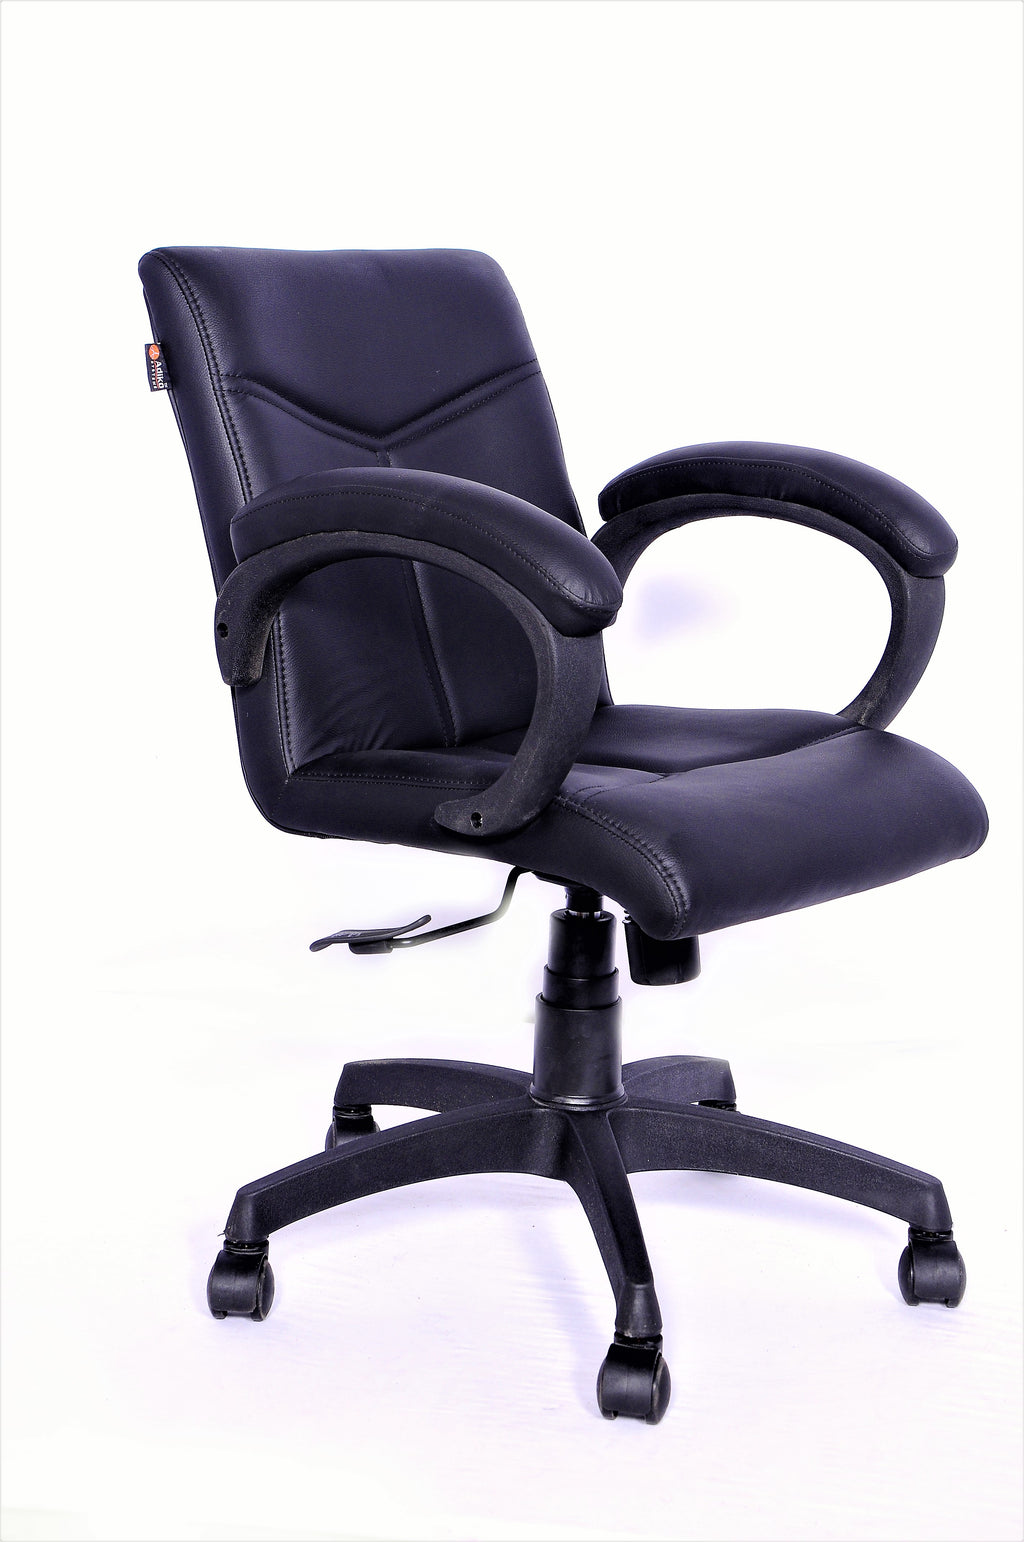 Detec™ Adiko Low back Office chair in Black